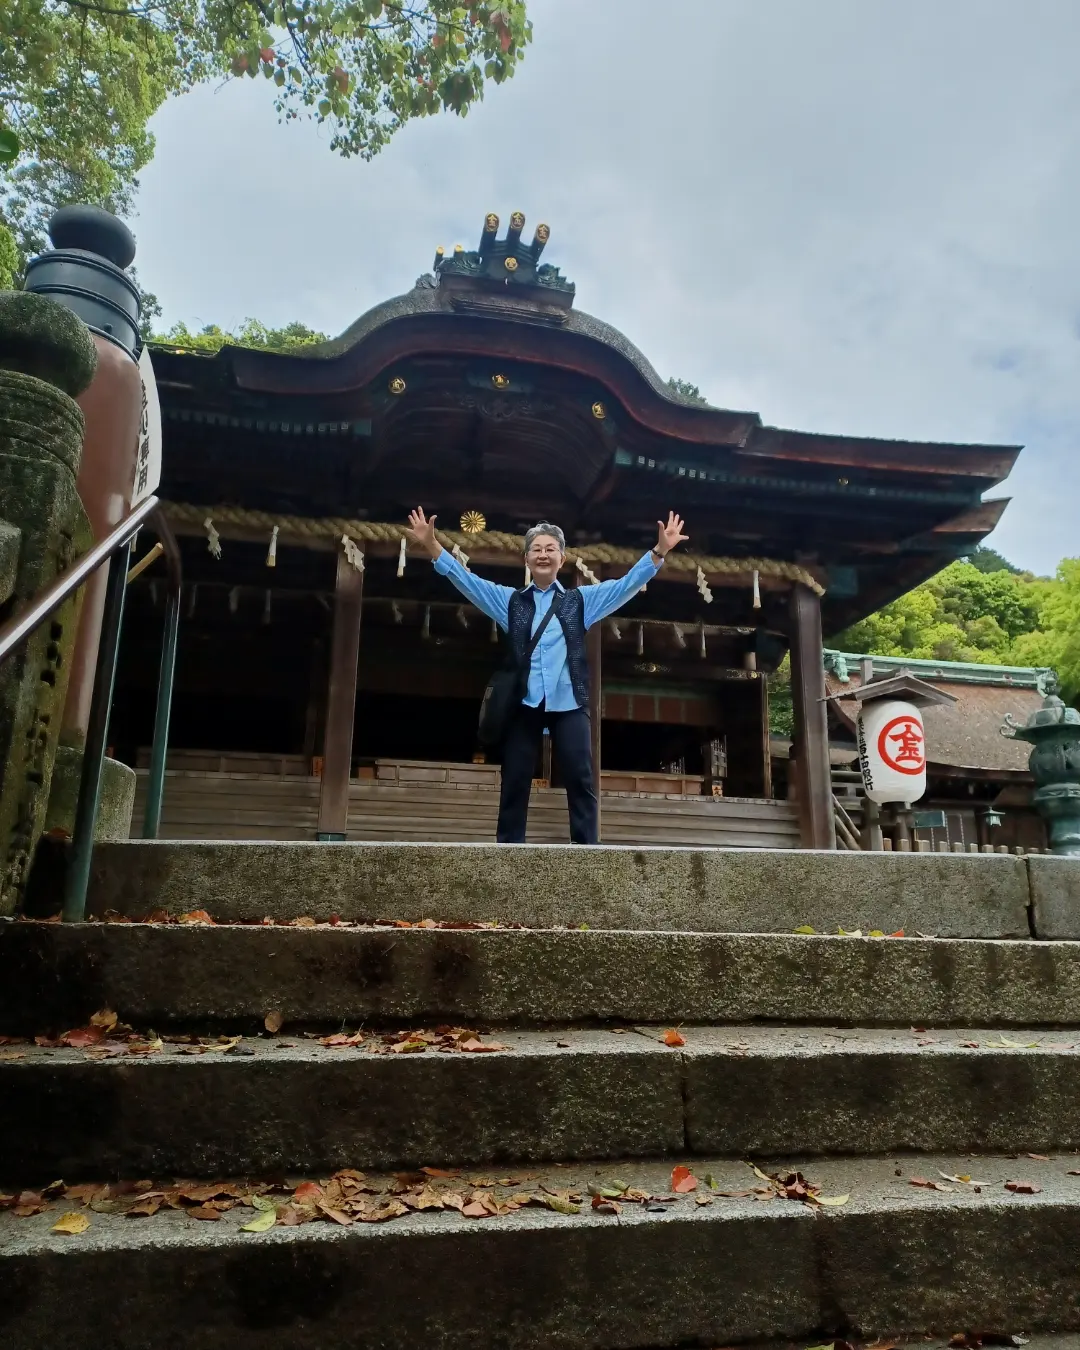 香川県のお遍路旅の間に金比羅参りをしました🙏誕生日の前日でとても良い思い出作りが出来ました😊